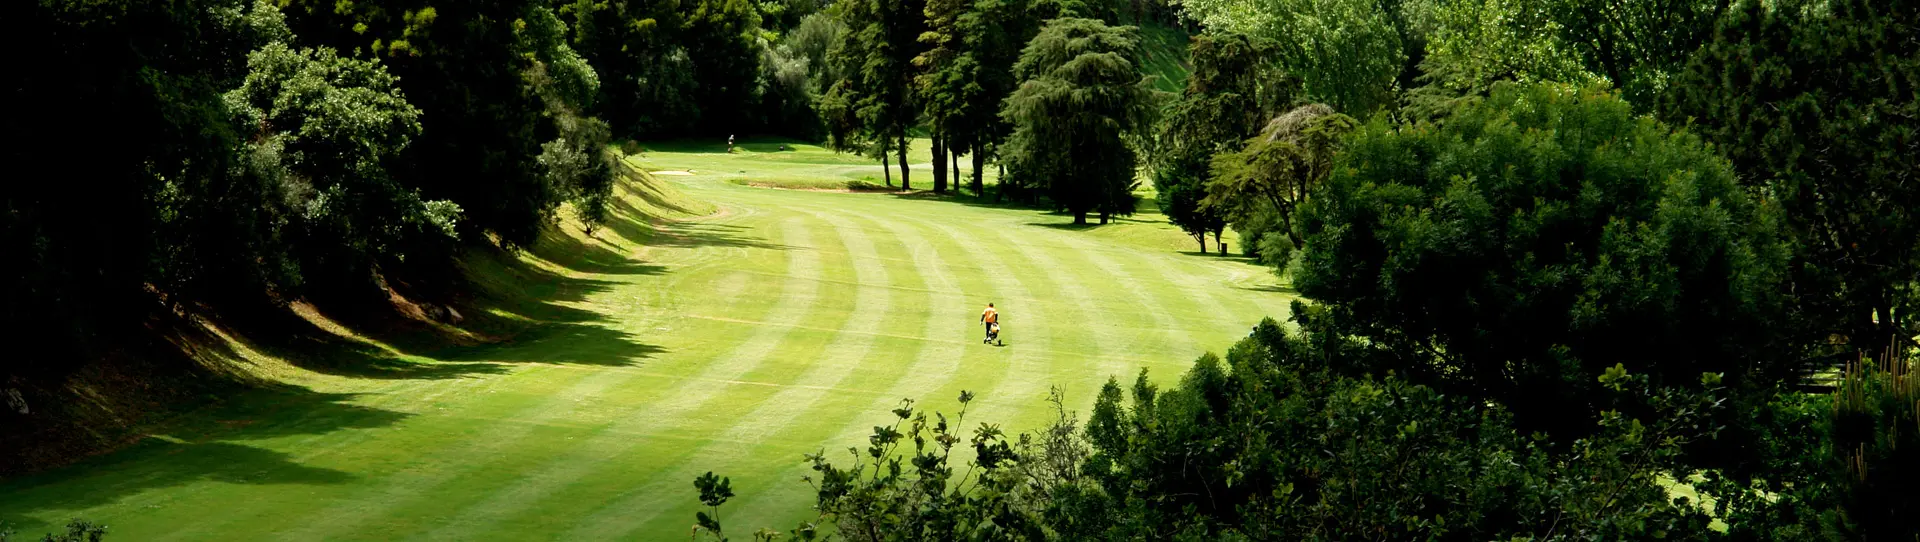 Portugal golf holidays - Cascais Trio Experience - Photo 3